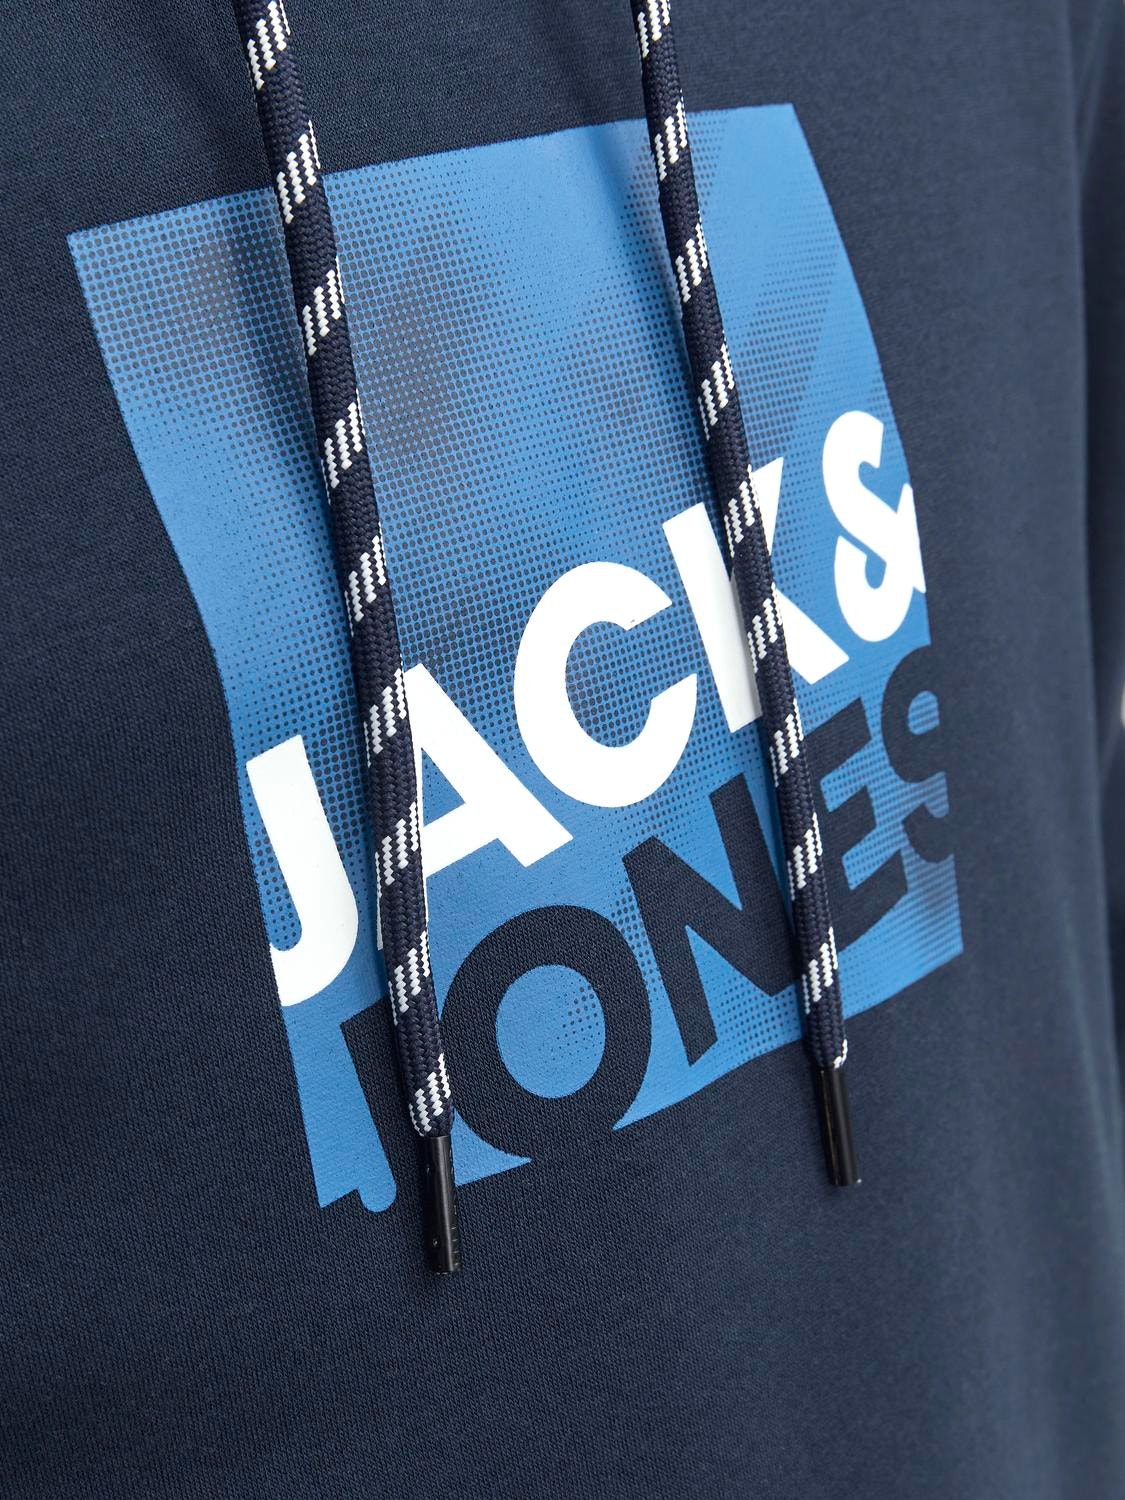 Jack & Jones Hoodie Logo -Navy Blazer - 12246994